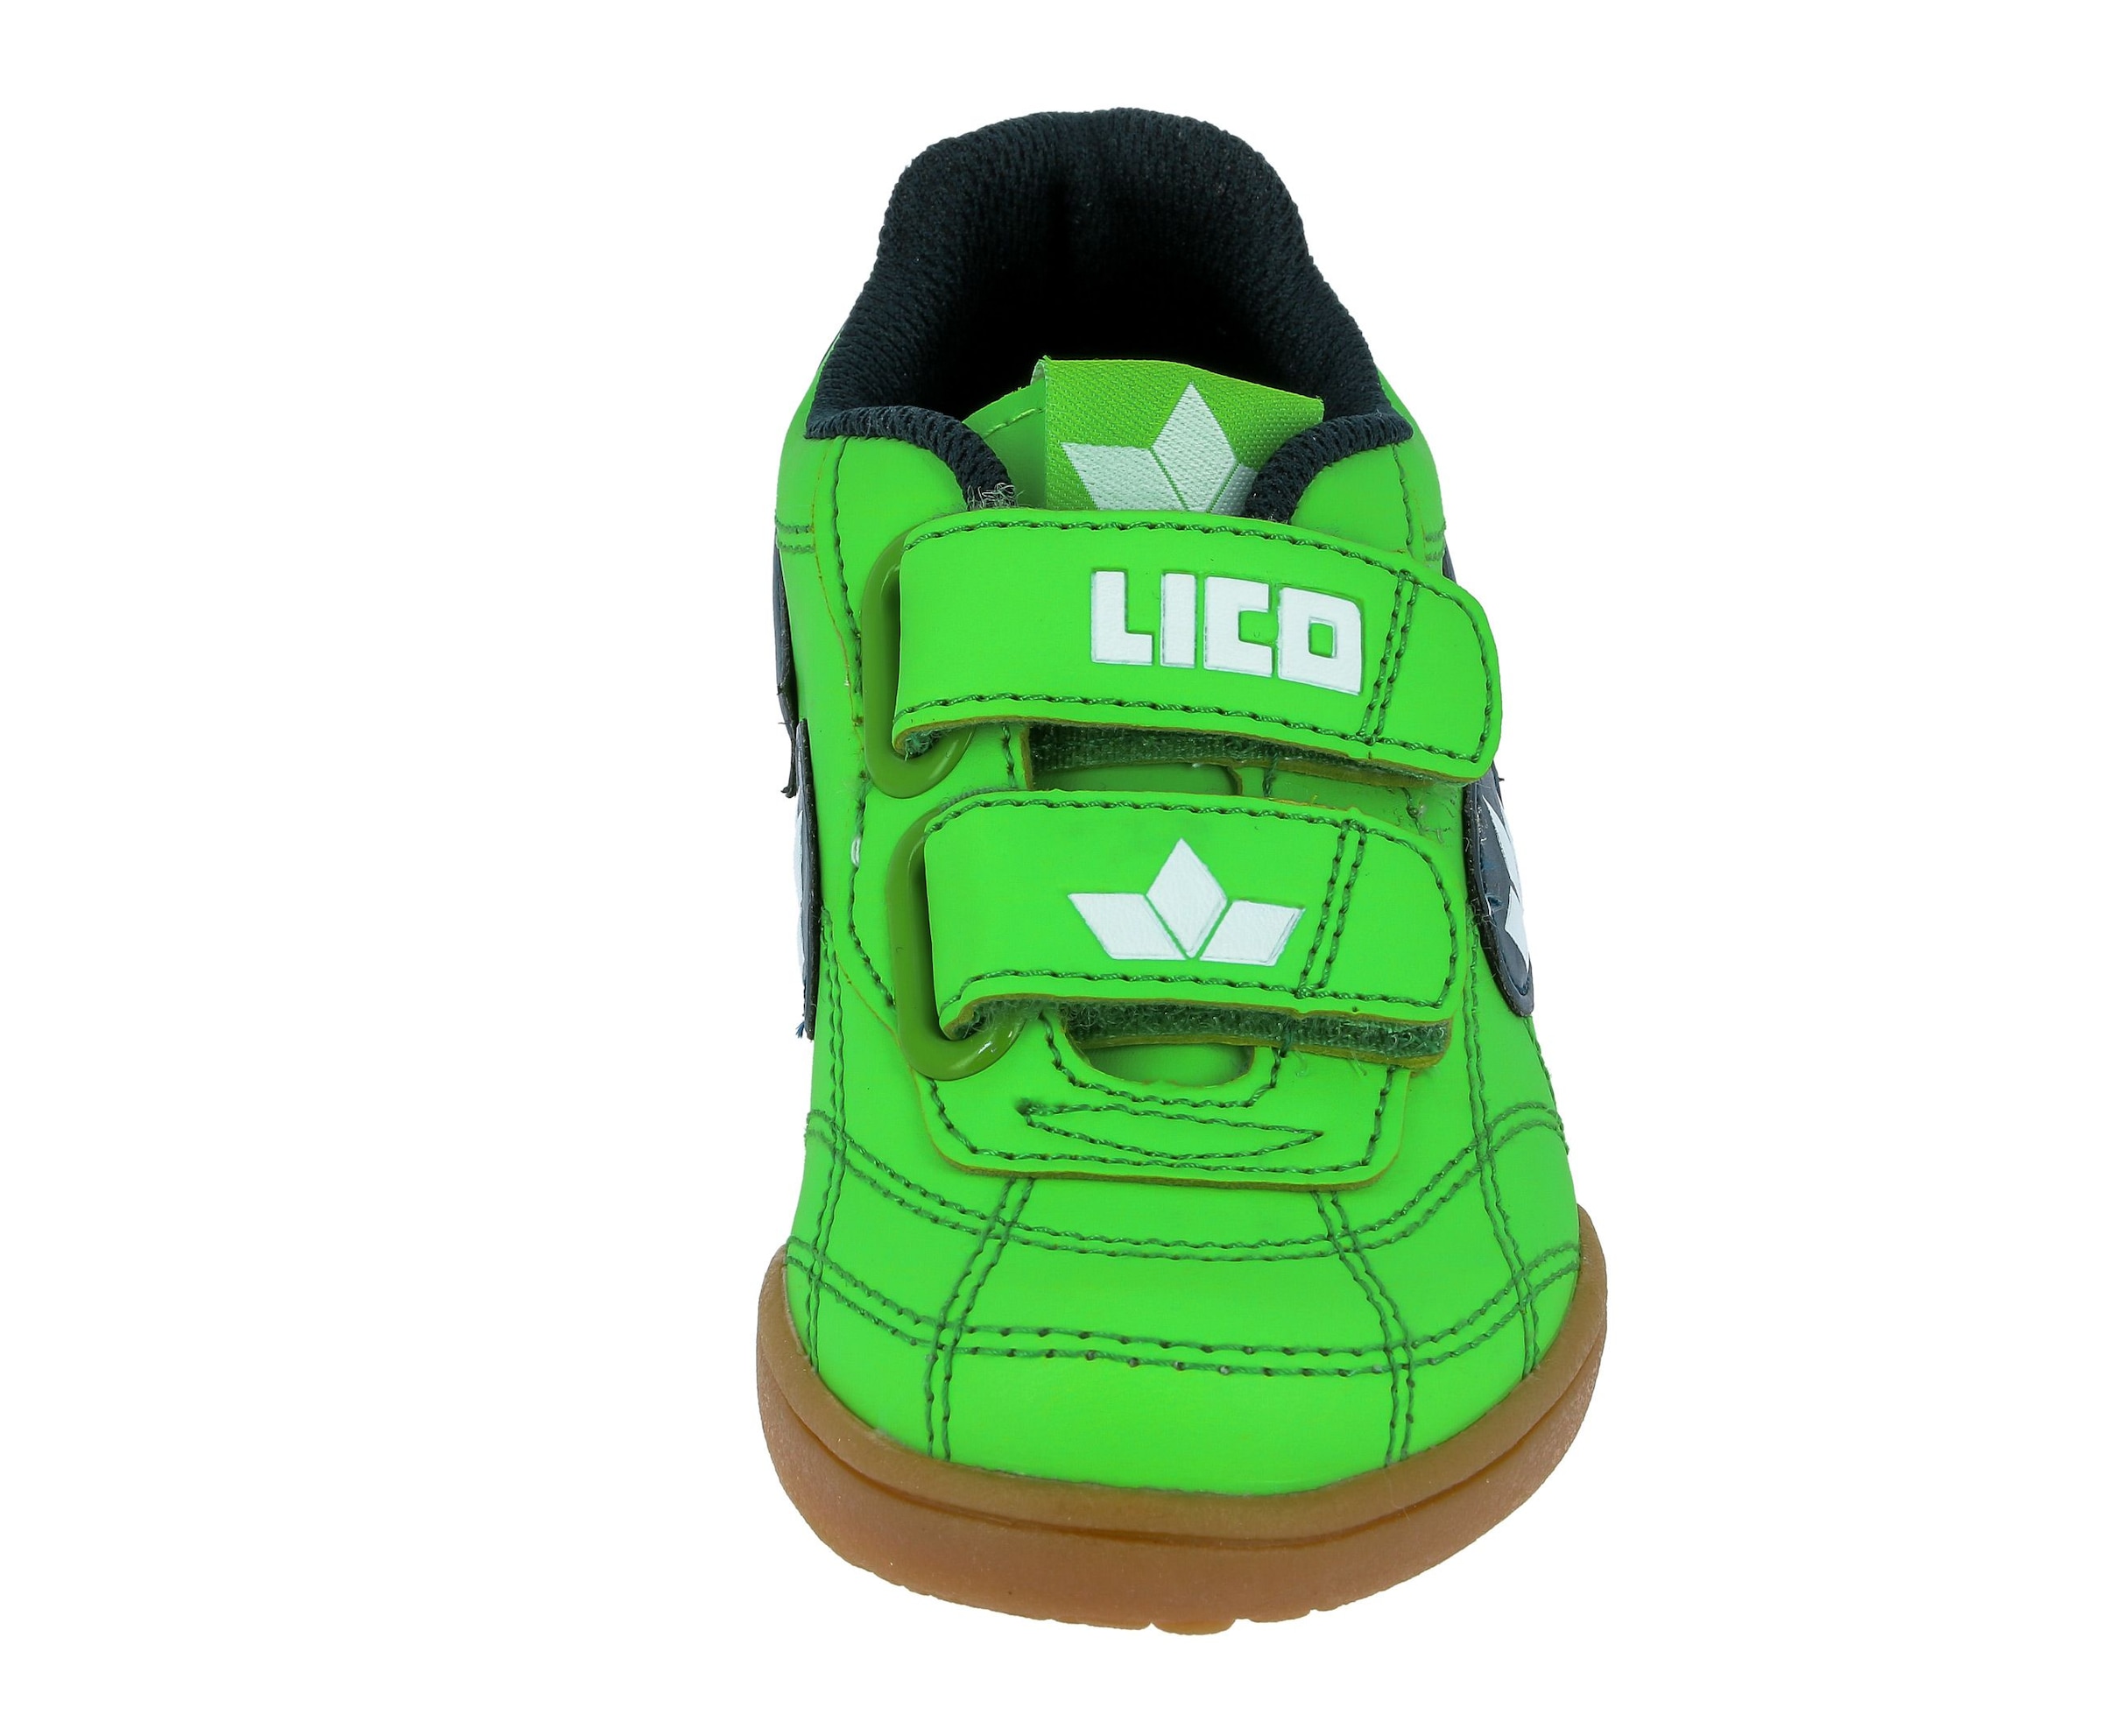 »Kindersportschuh kaufen OTTO Indoorschuh Bernie Lico V« bei